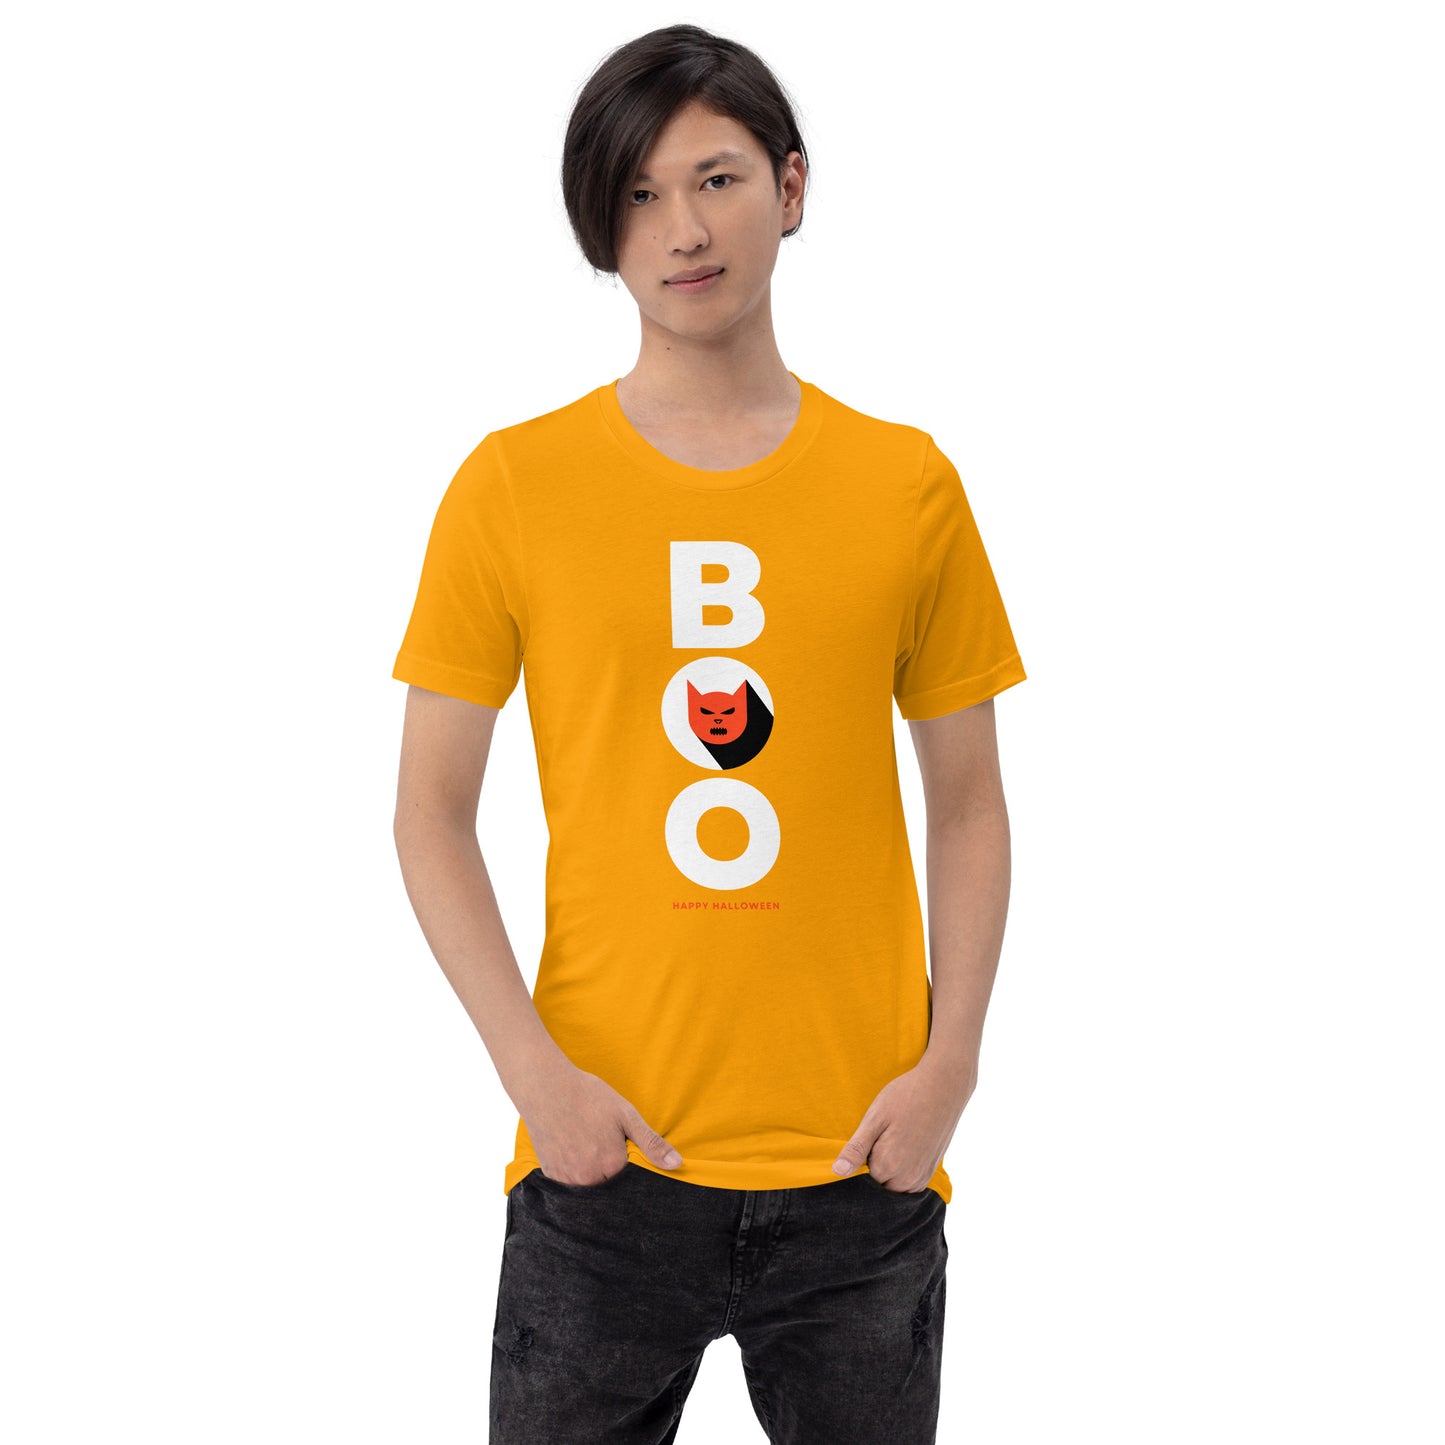 Boo Unisex t-shirt